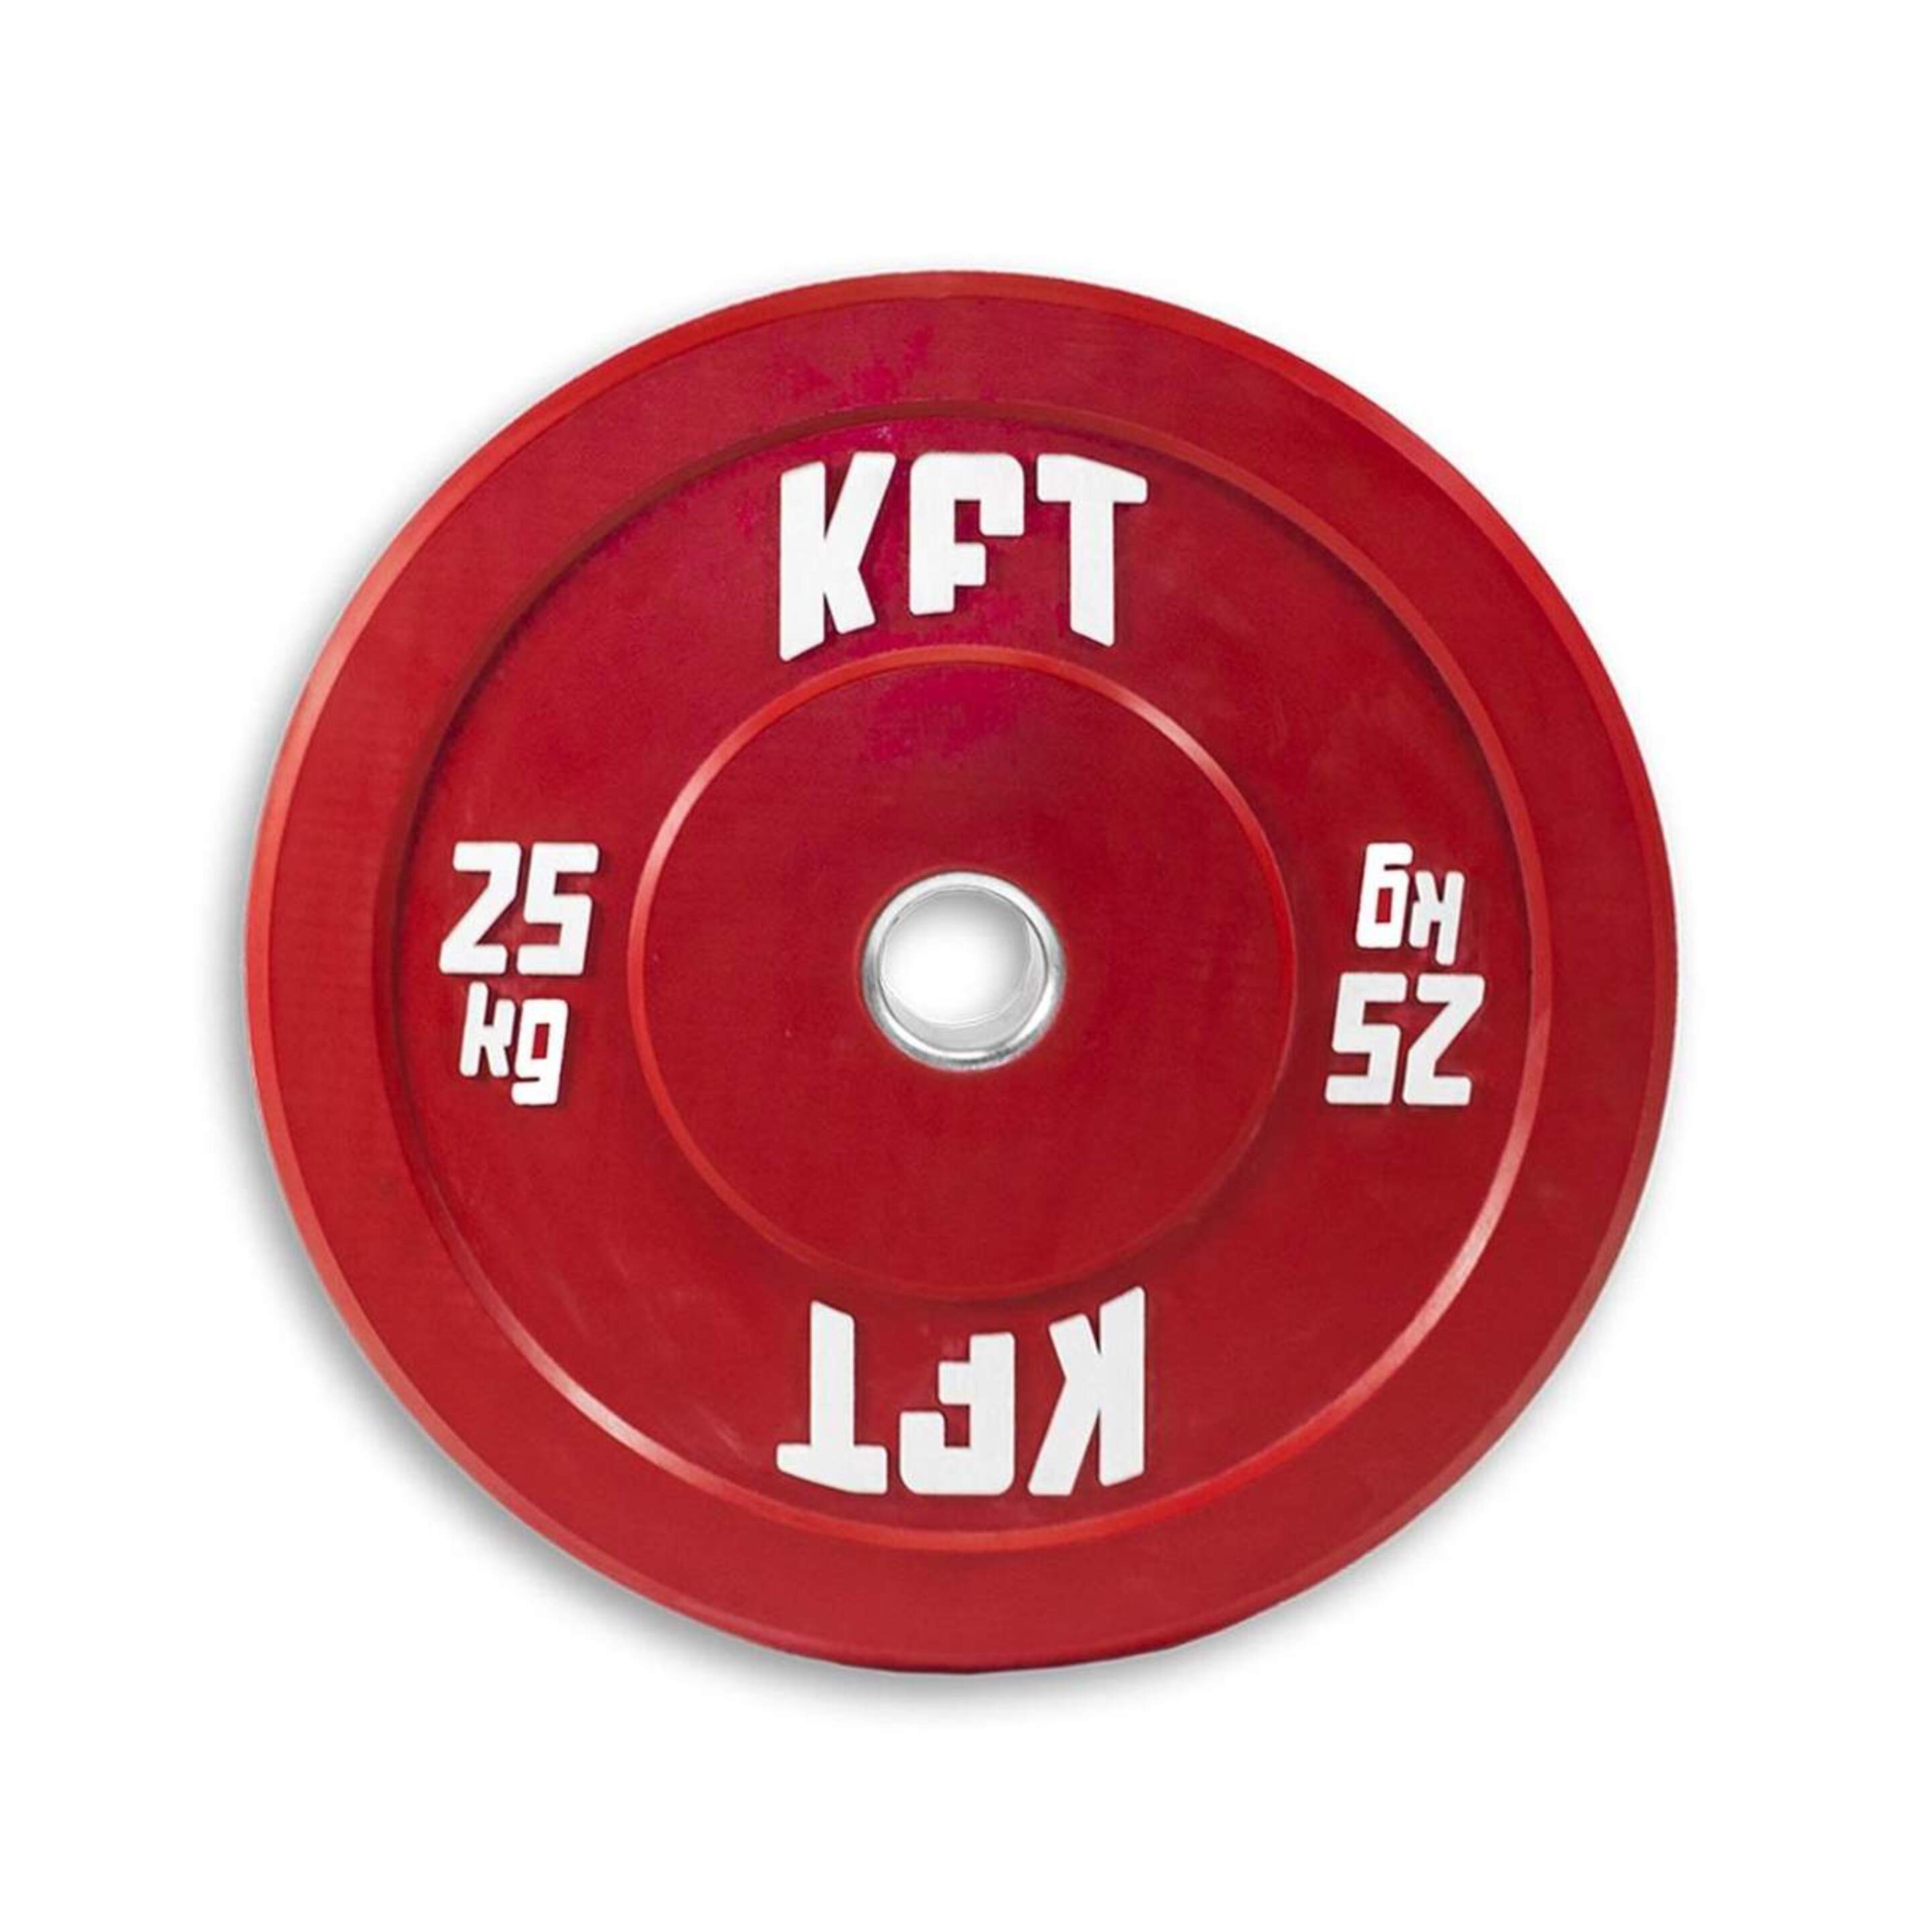 Disco Bumper Kft 25kg - Rojo  MKP